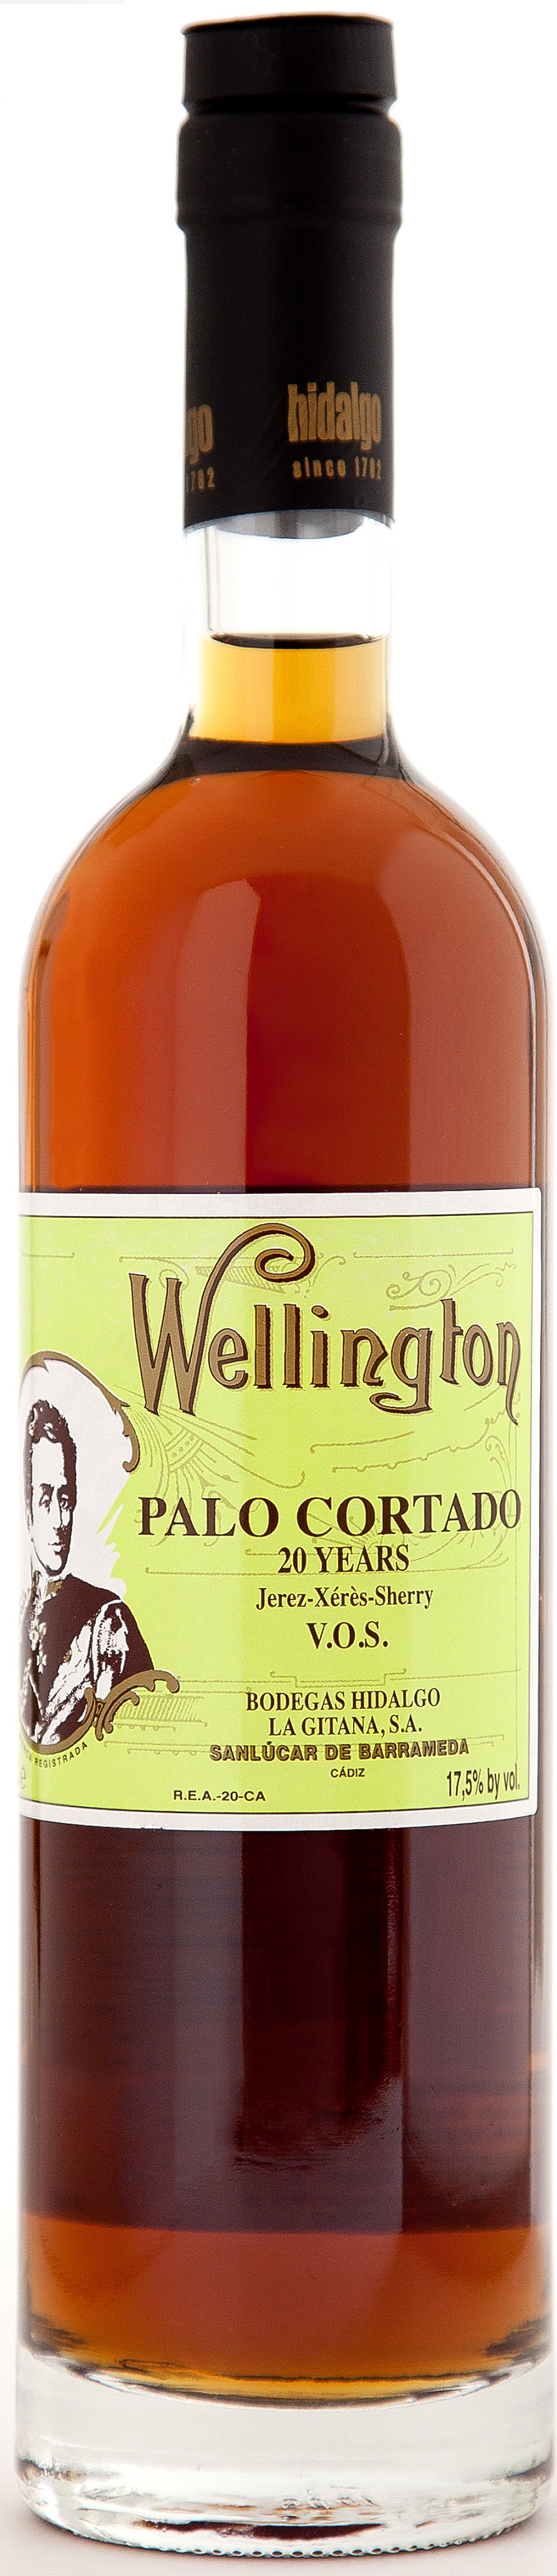 Image of Wine bottle Palo Cortado Wellington V.O.S.